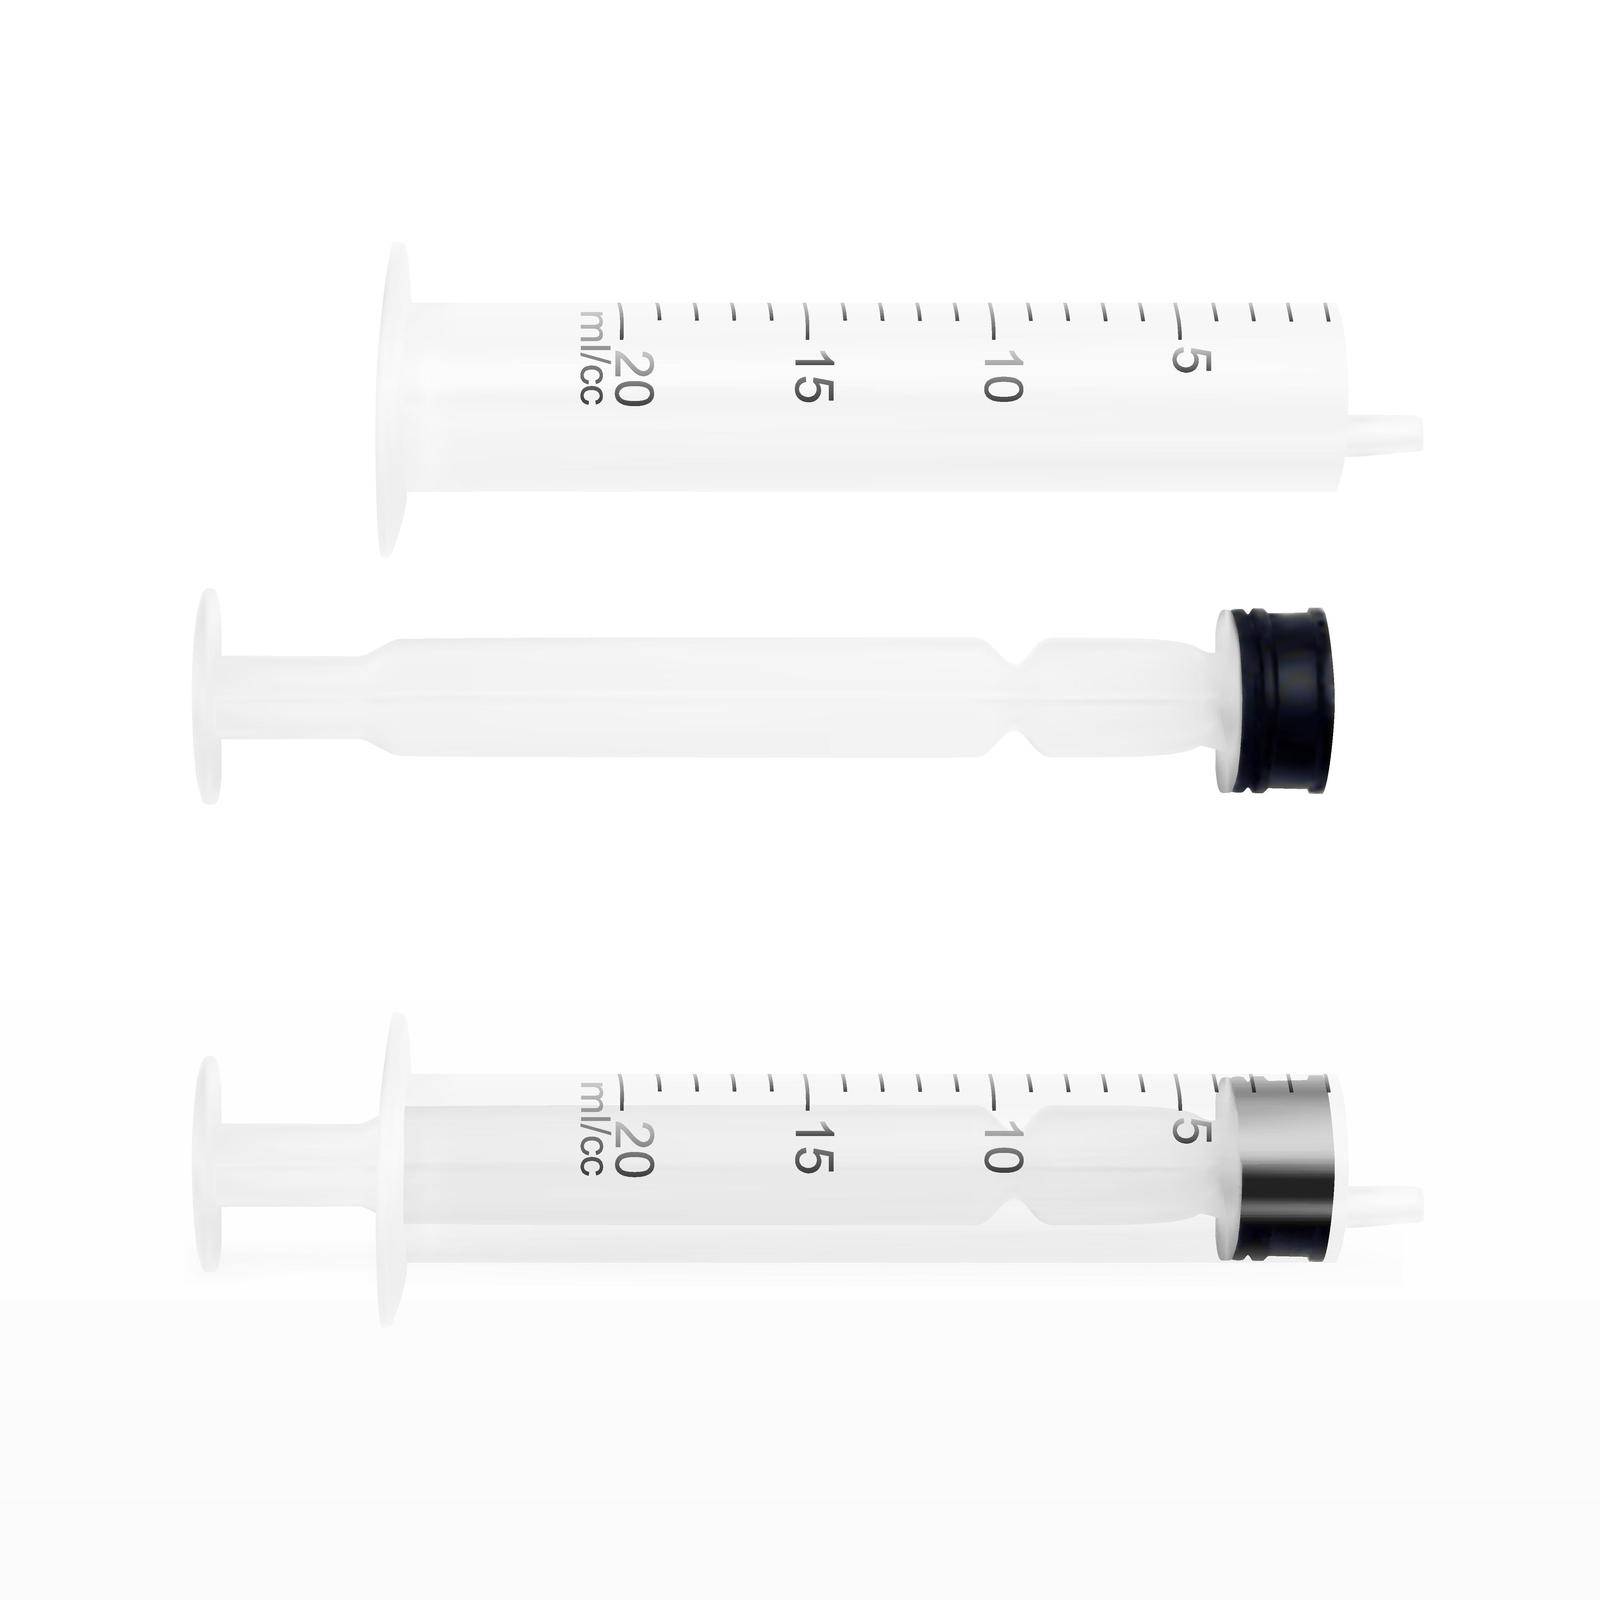 Realistic Syringe Isolated On White Background. EPS10 Vector